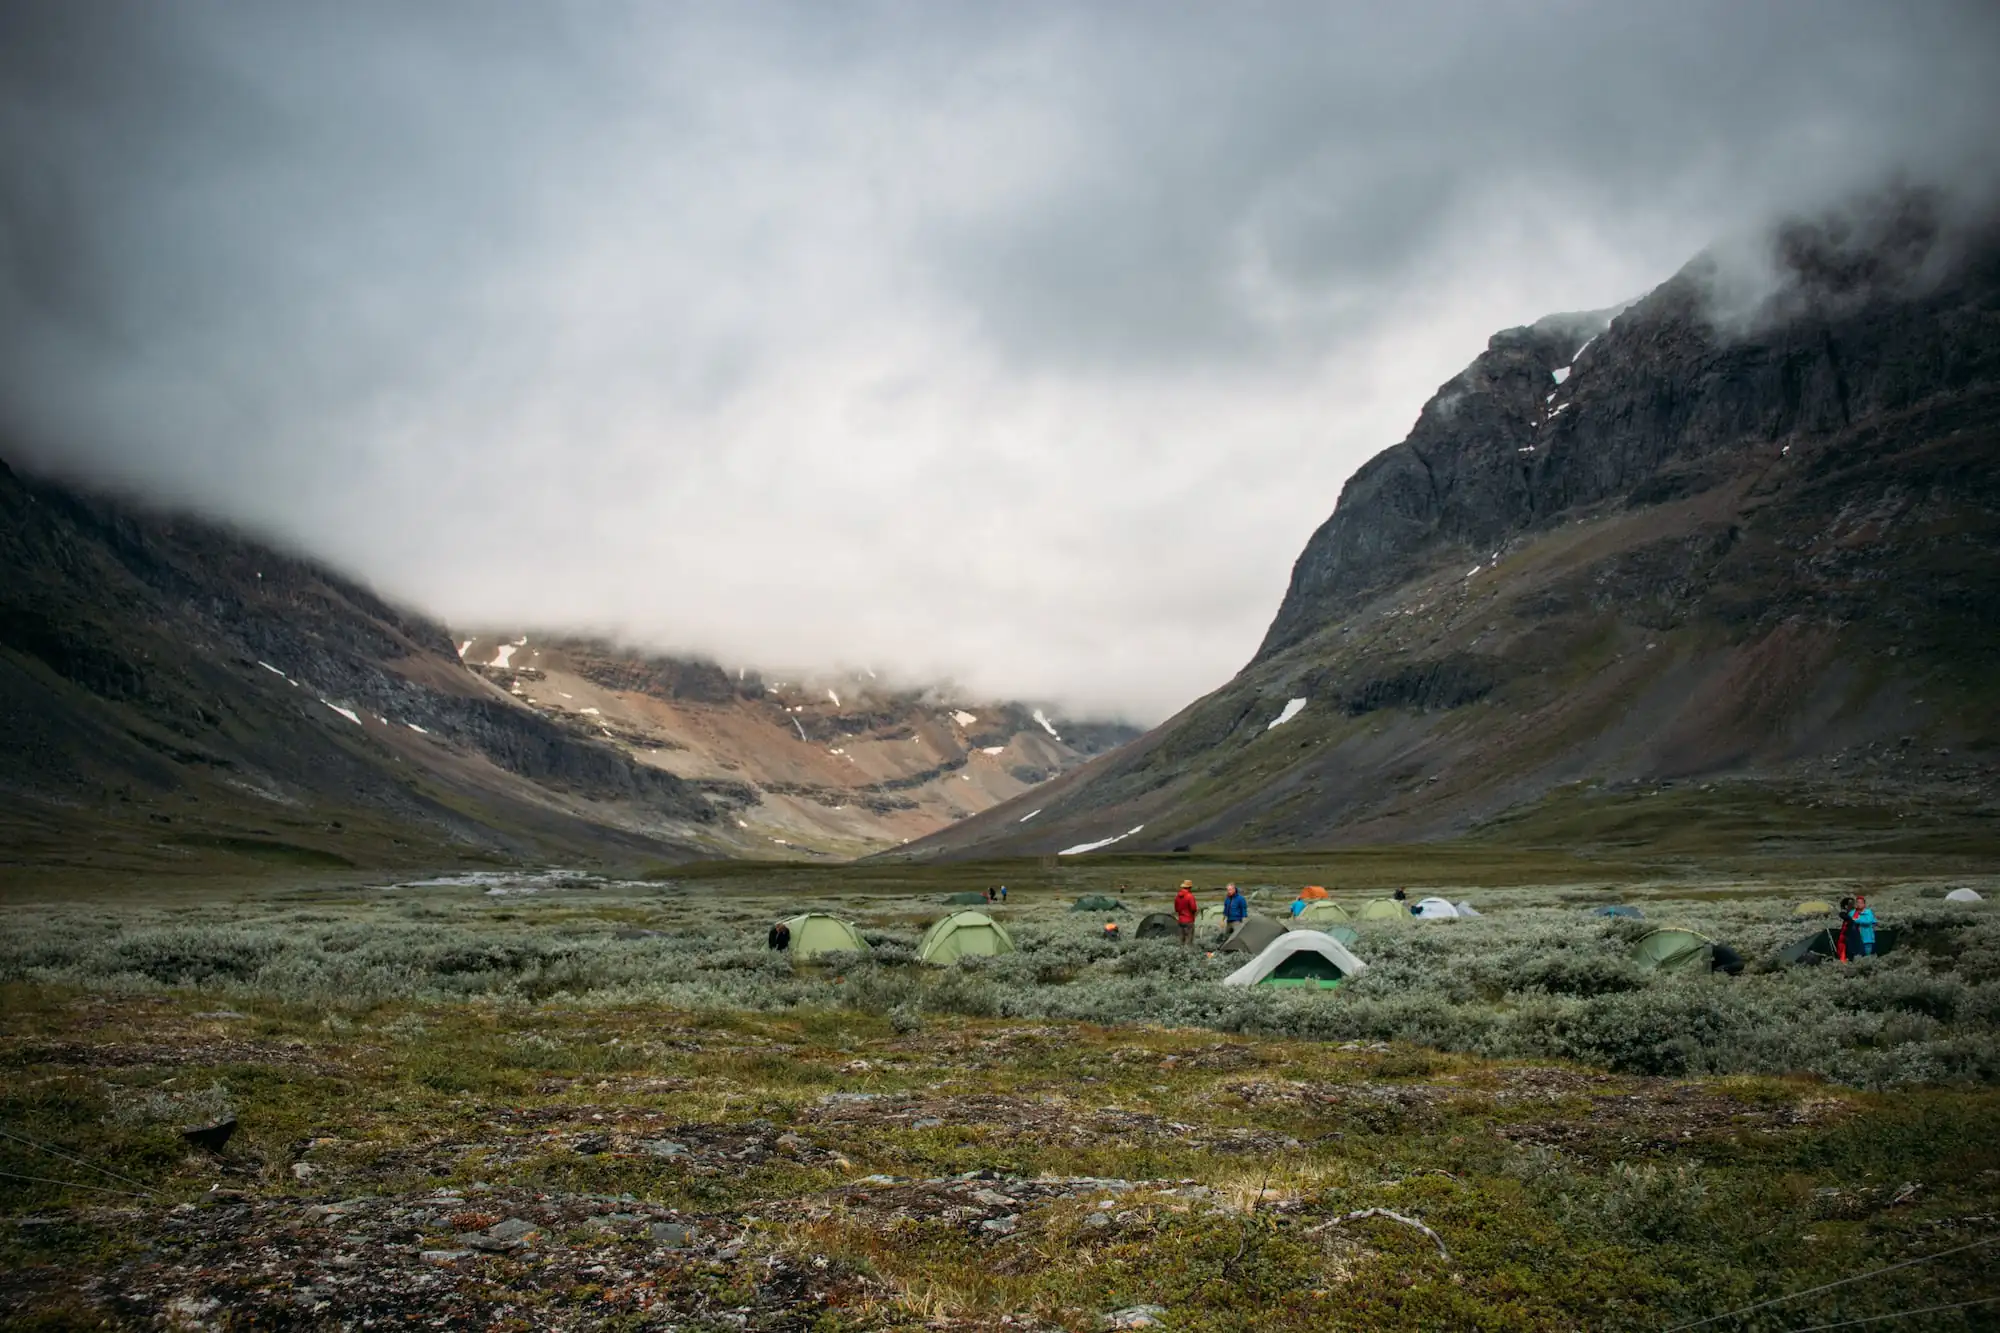 Zelte in der Landschaft: Spaß auf einem Wanderausflug mit Zelt